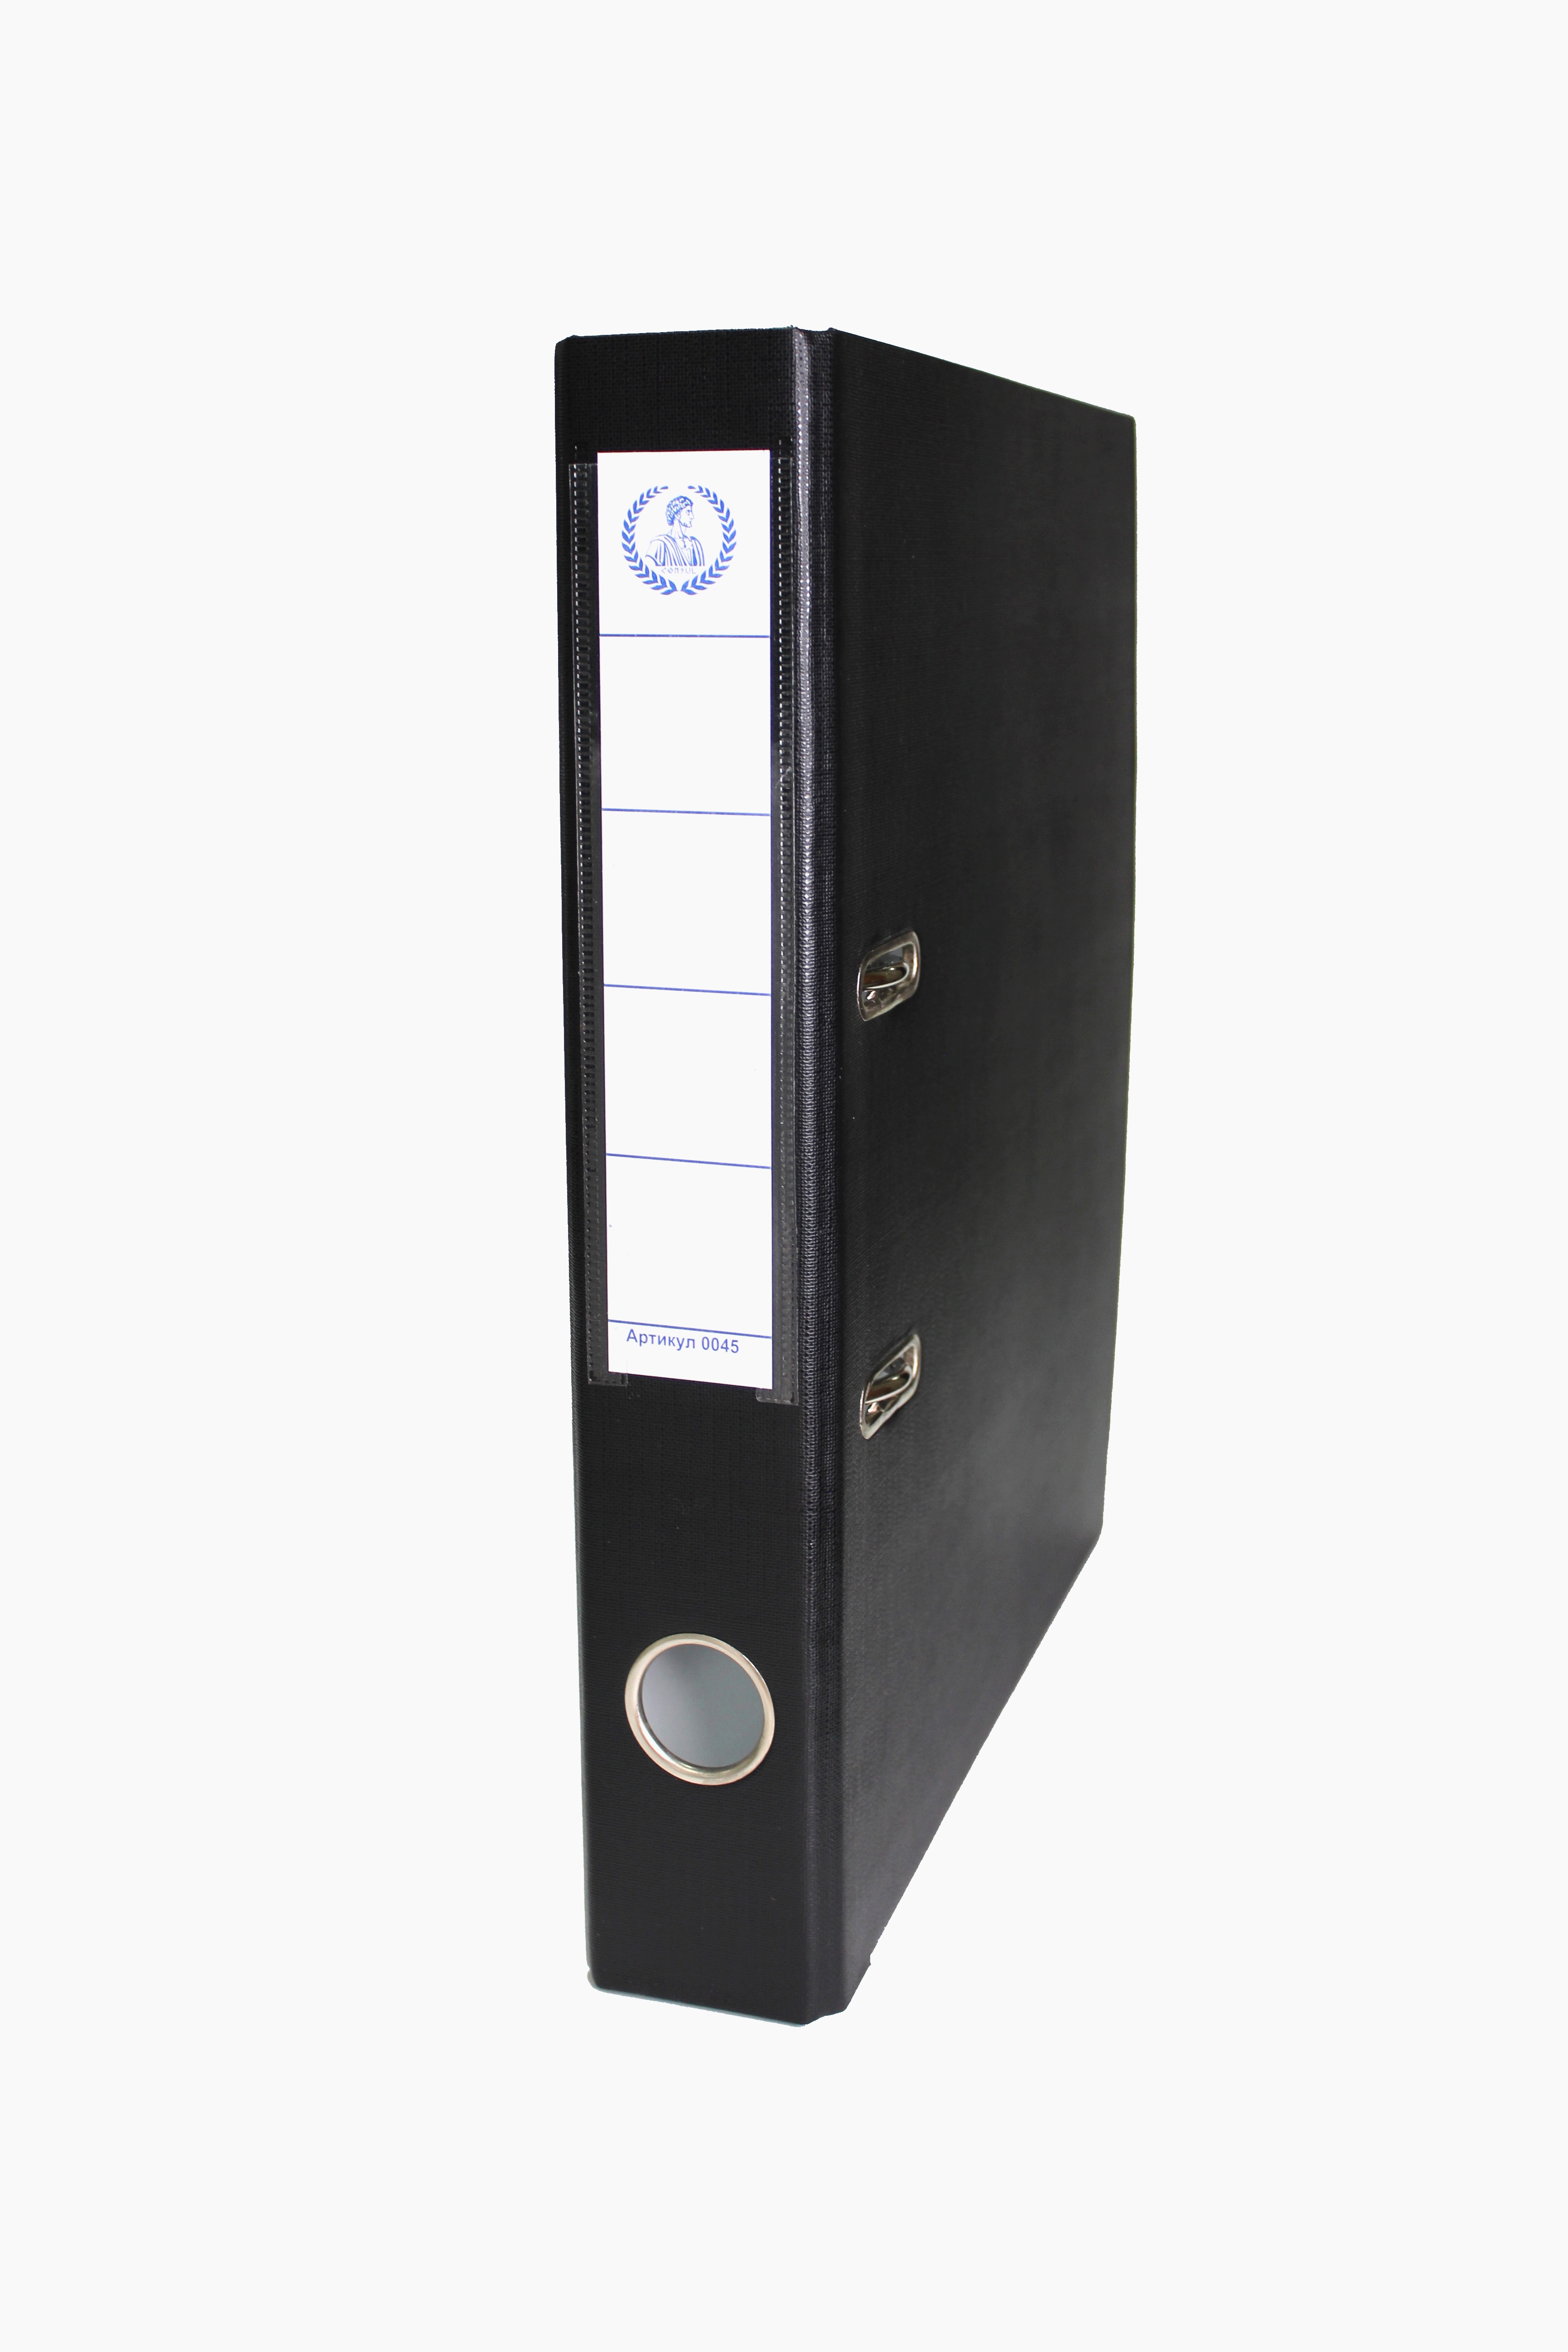 Папка-регистратор Консул ПВХ 50 мм металлический уголок кармашек со сменной этикеткой Цвет корешка черный - фото 1